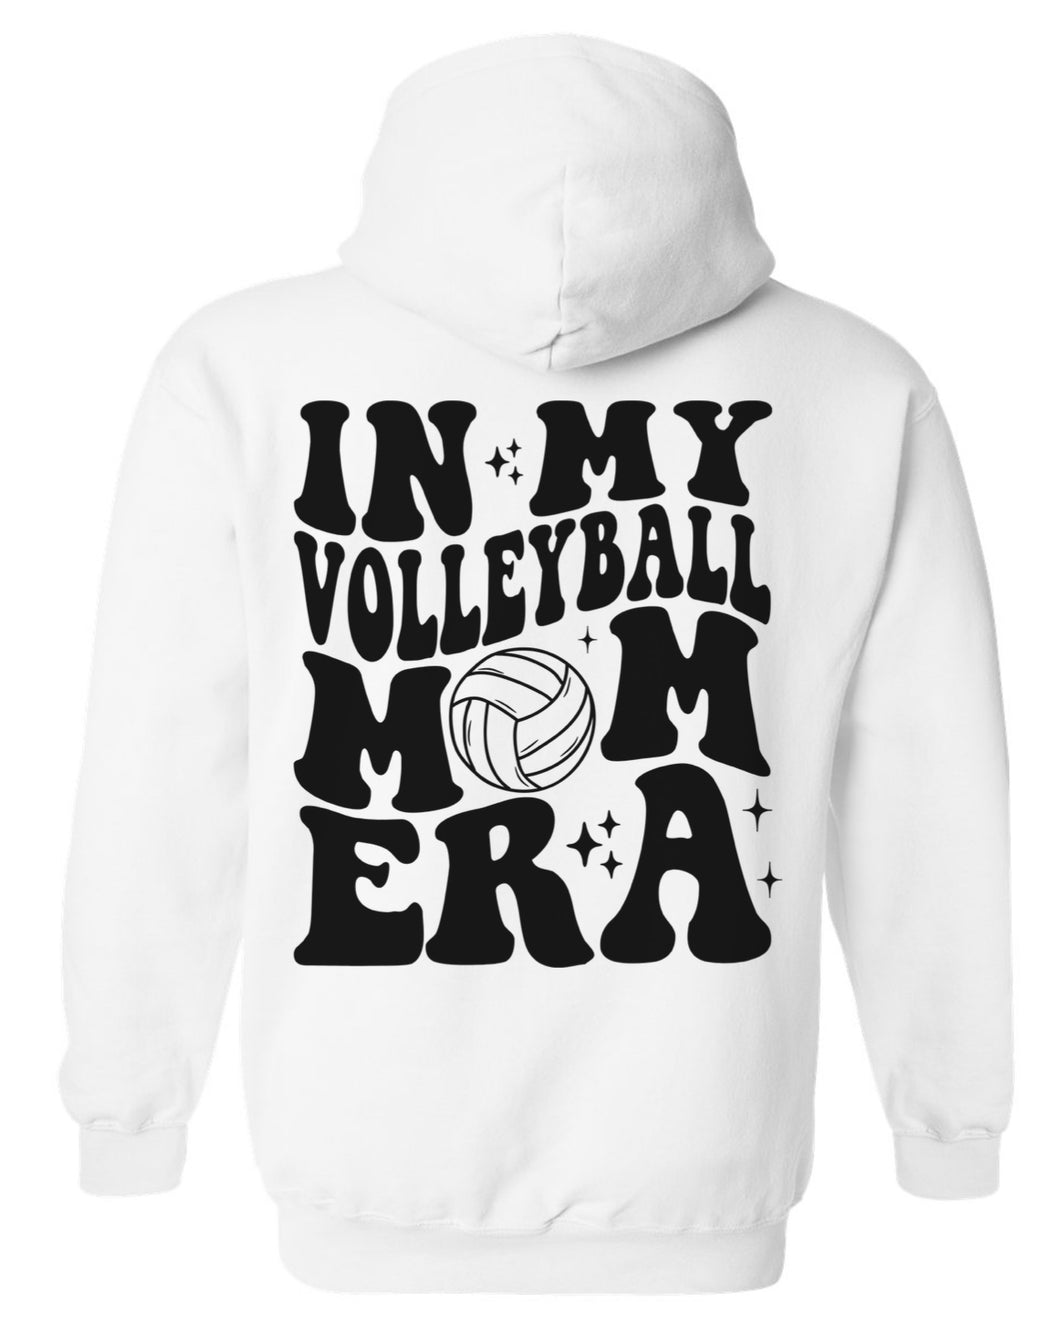 Volleyball Mom Era Sweatshirt